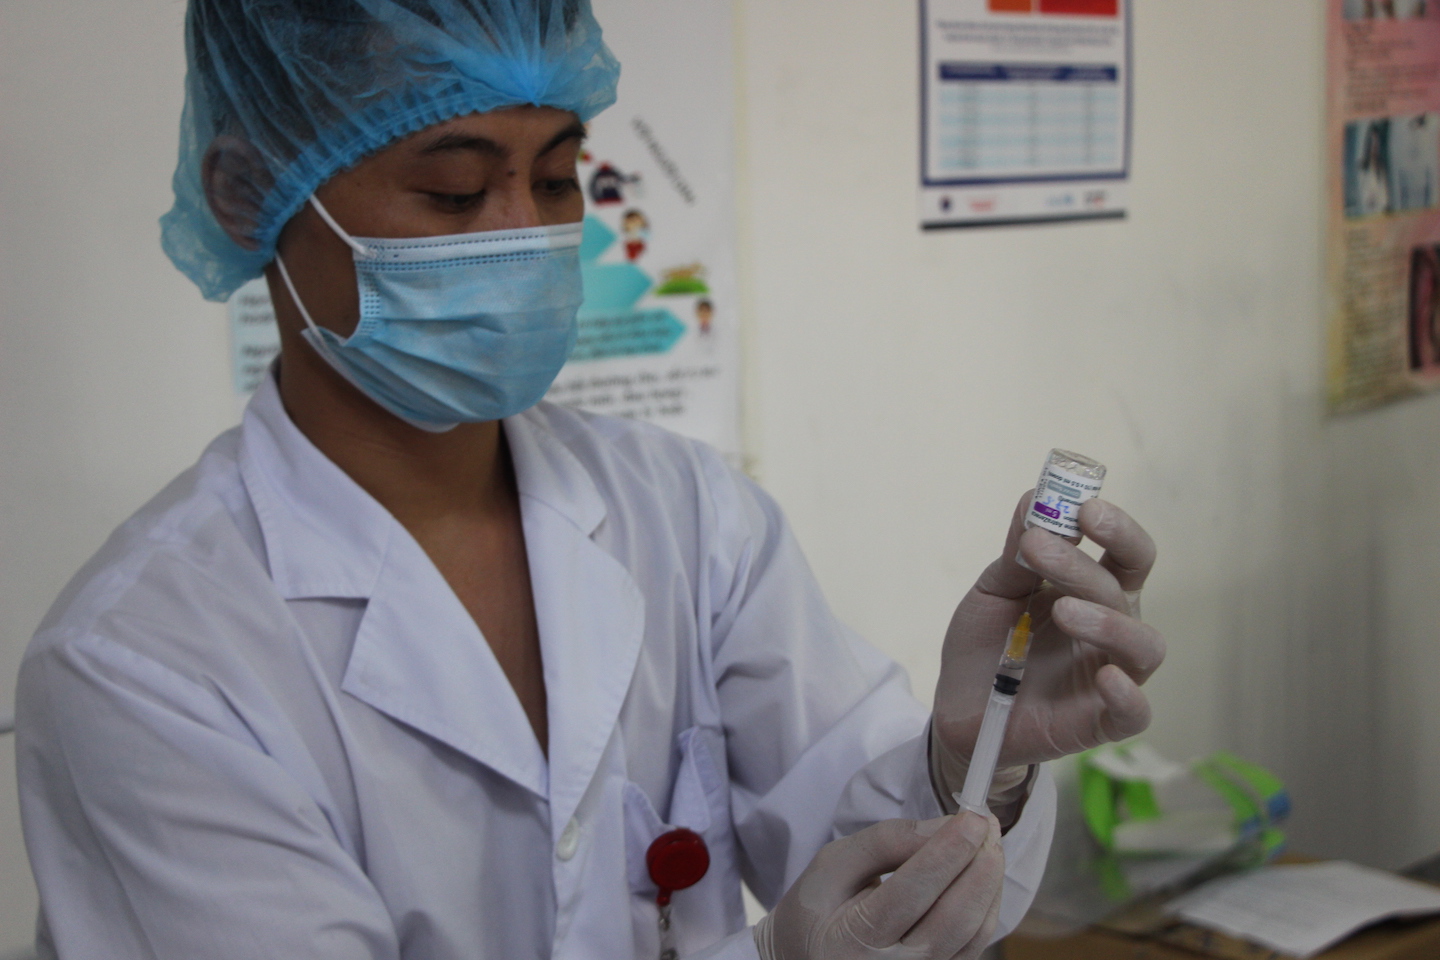 CLIP: Bắt đầu chiến dịch tiêm vắc-xin Covid-19 cho hàng trăm ngàn công nhân ở tâm dịch - Ảnh 8.